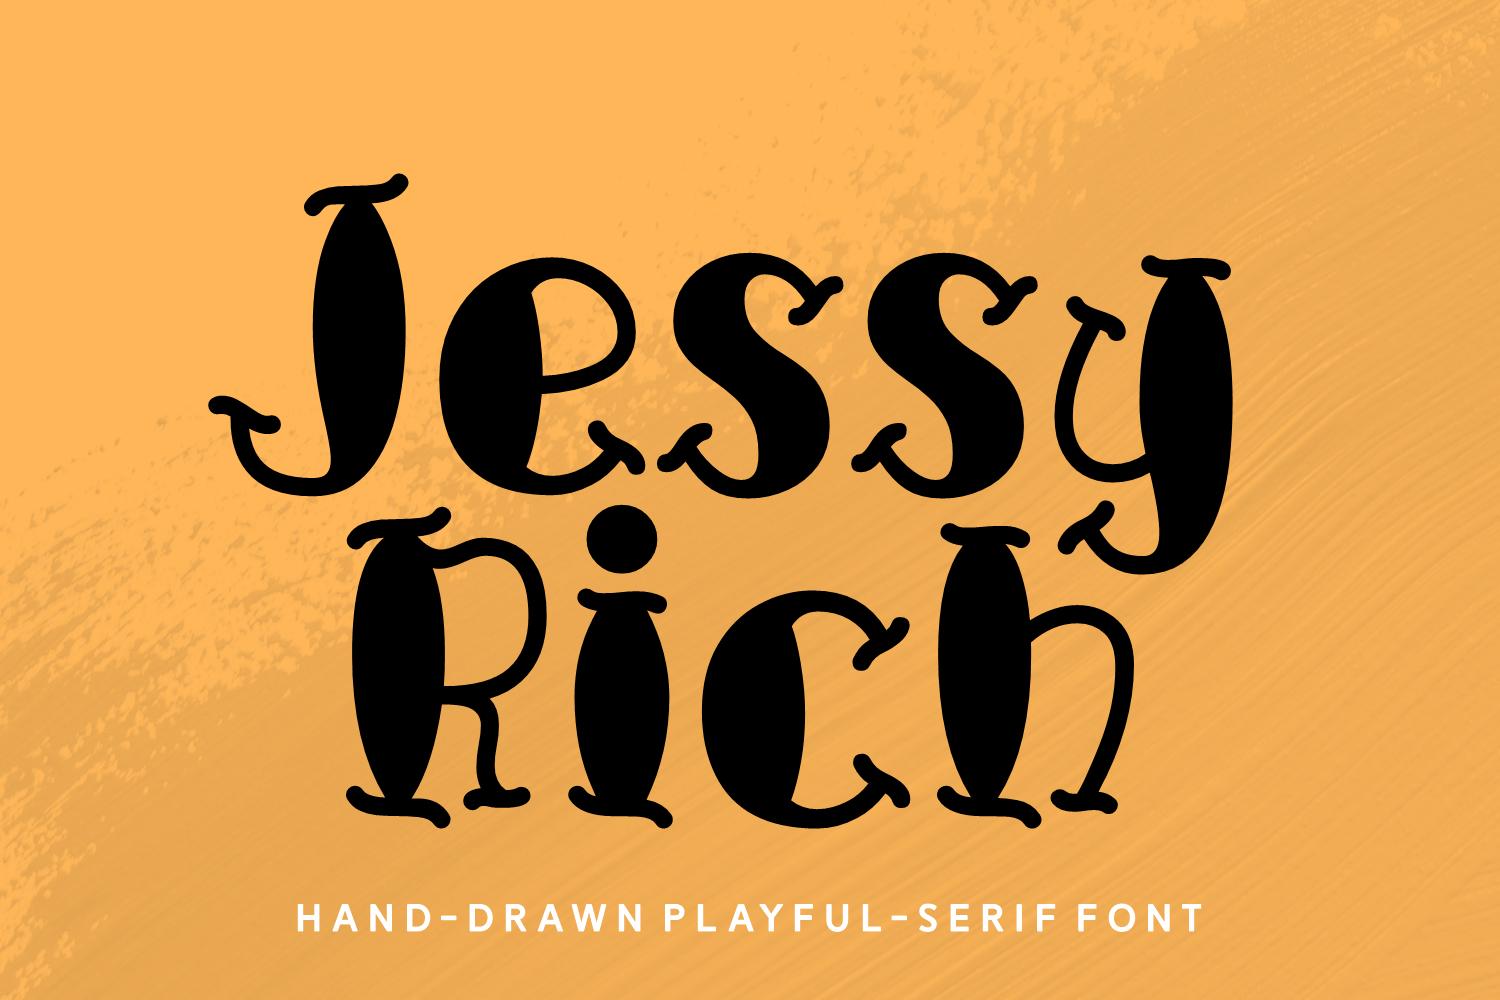 Jessy Rich Font